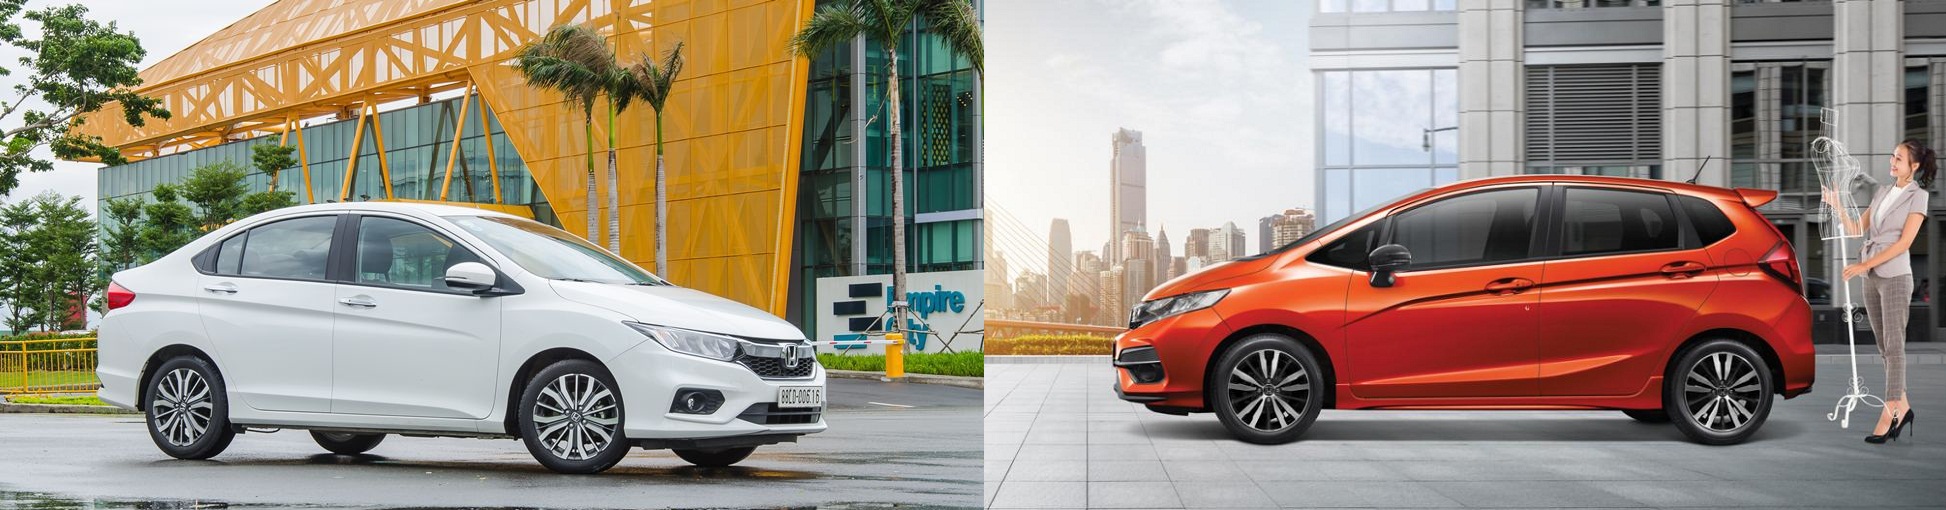 So sánh thiết kế ô tô Honda City 2019 và Honda Jazz 2019